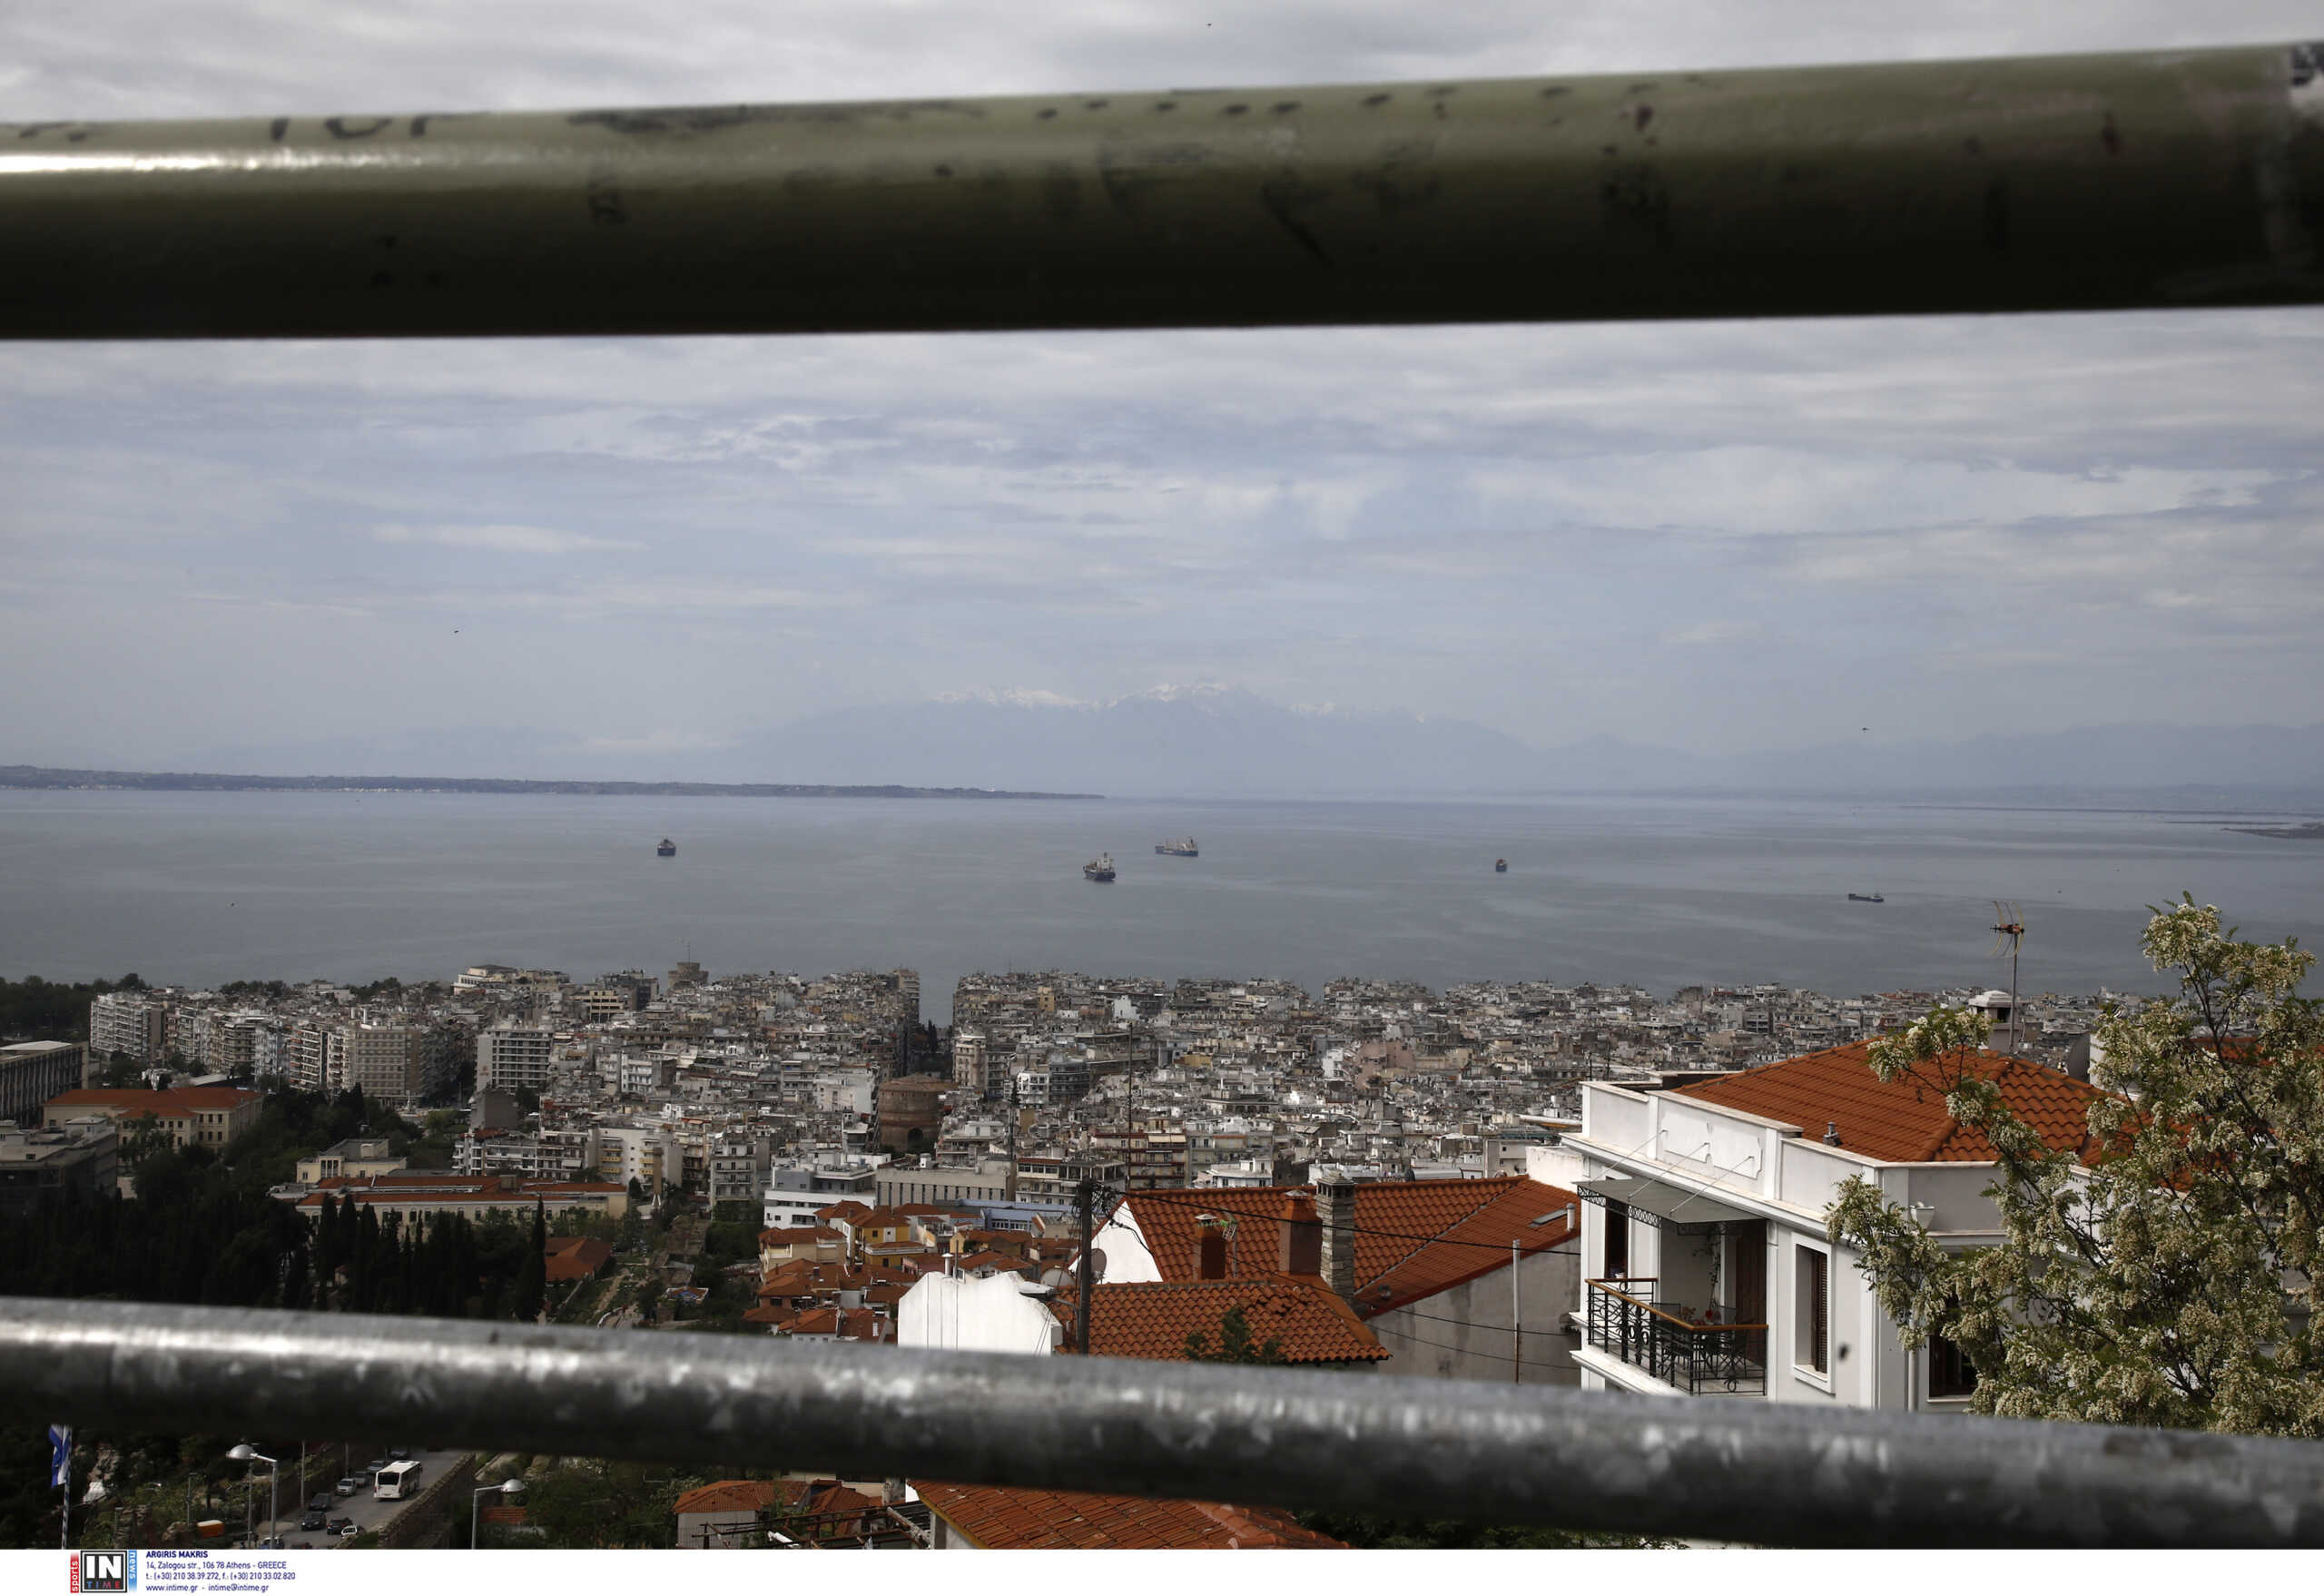 Θεσσαλονίκη: Ασημένιος φασιανός από την Ασία βρέθηκε σε πυλωτή πολυκατοικίας στην Καλαμαριά